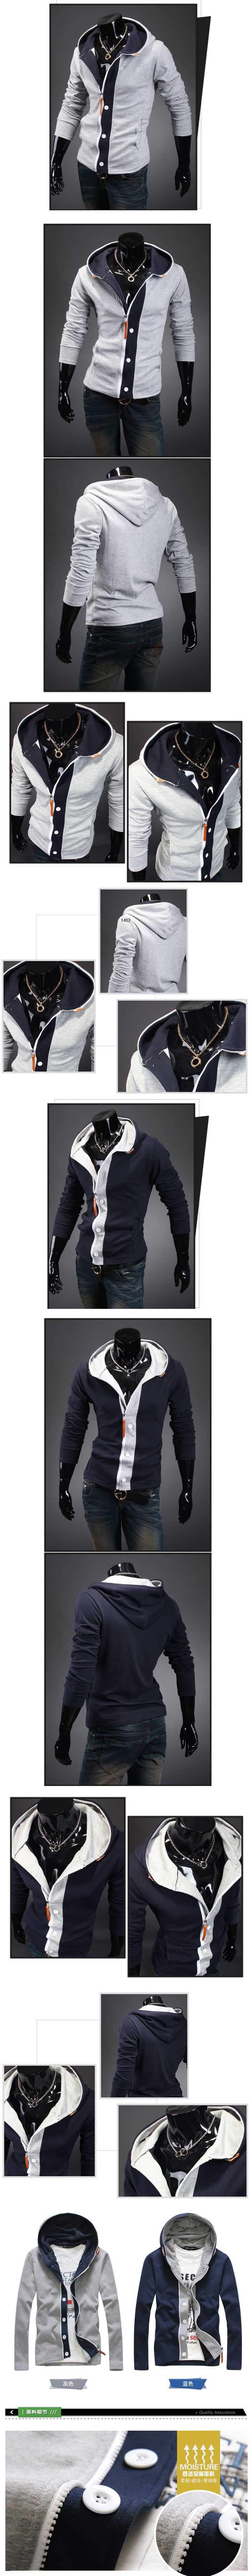 jual jaket pria import model korea dengan gaya kasual yang sedang trend di korea